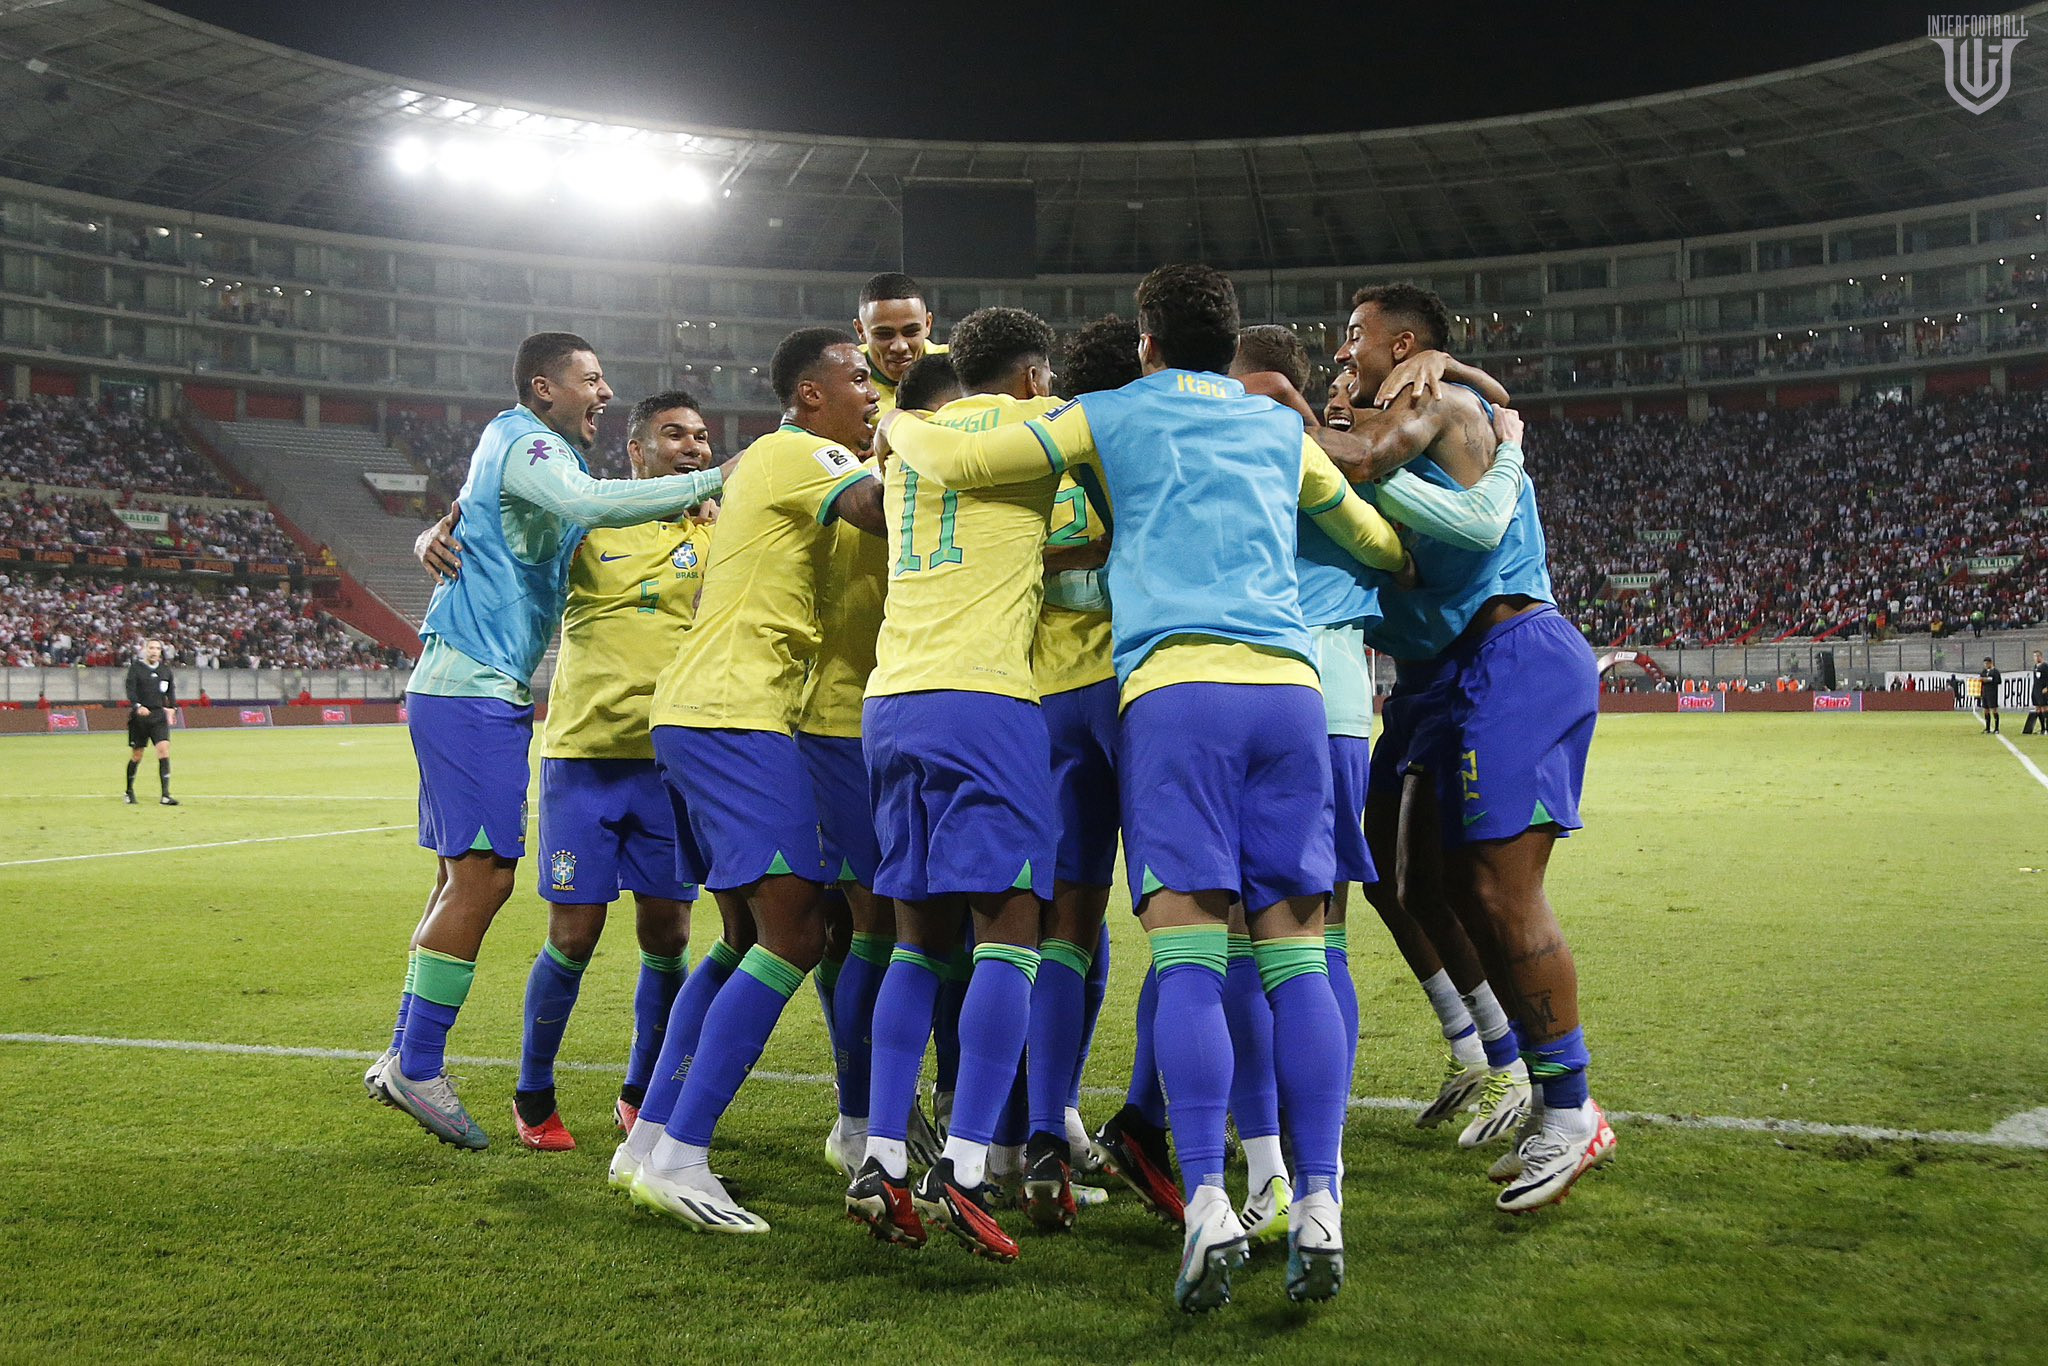 Դրամա Լիմայում. Բրազիլիան 90+րդ րոպեին հաղթանակ կորզեց Պերուի դեմ խաղում 🎥